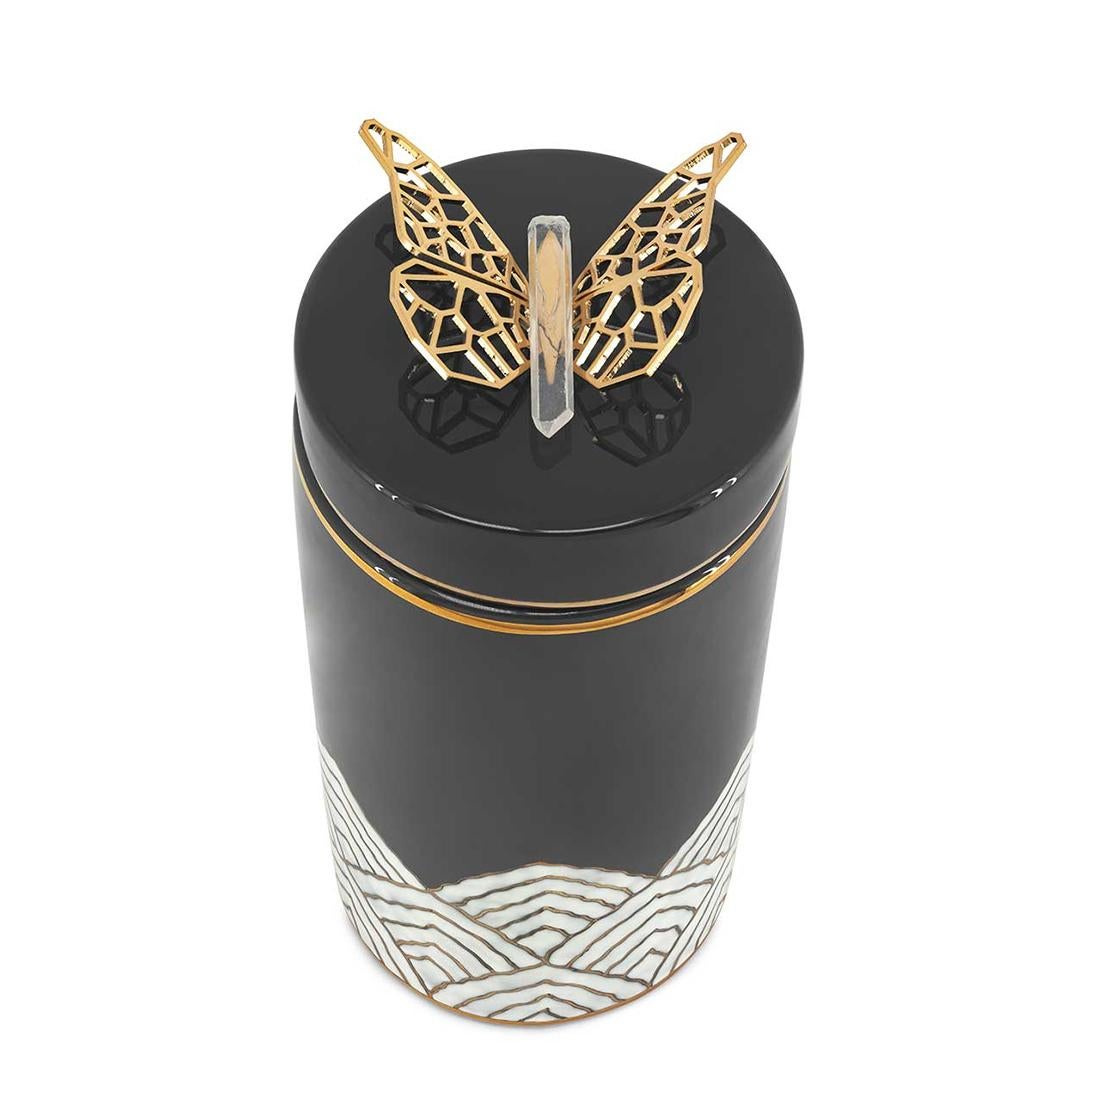 Boîte papillon en céramique émaillée de couleur noire
finition. Avec de la céramique émaillée blanche au
fond avec une bordure dorée. Boîte avec couvercle avec
papillon en laiton poli sur le dessus du couvercle.